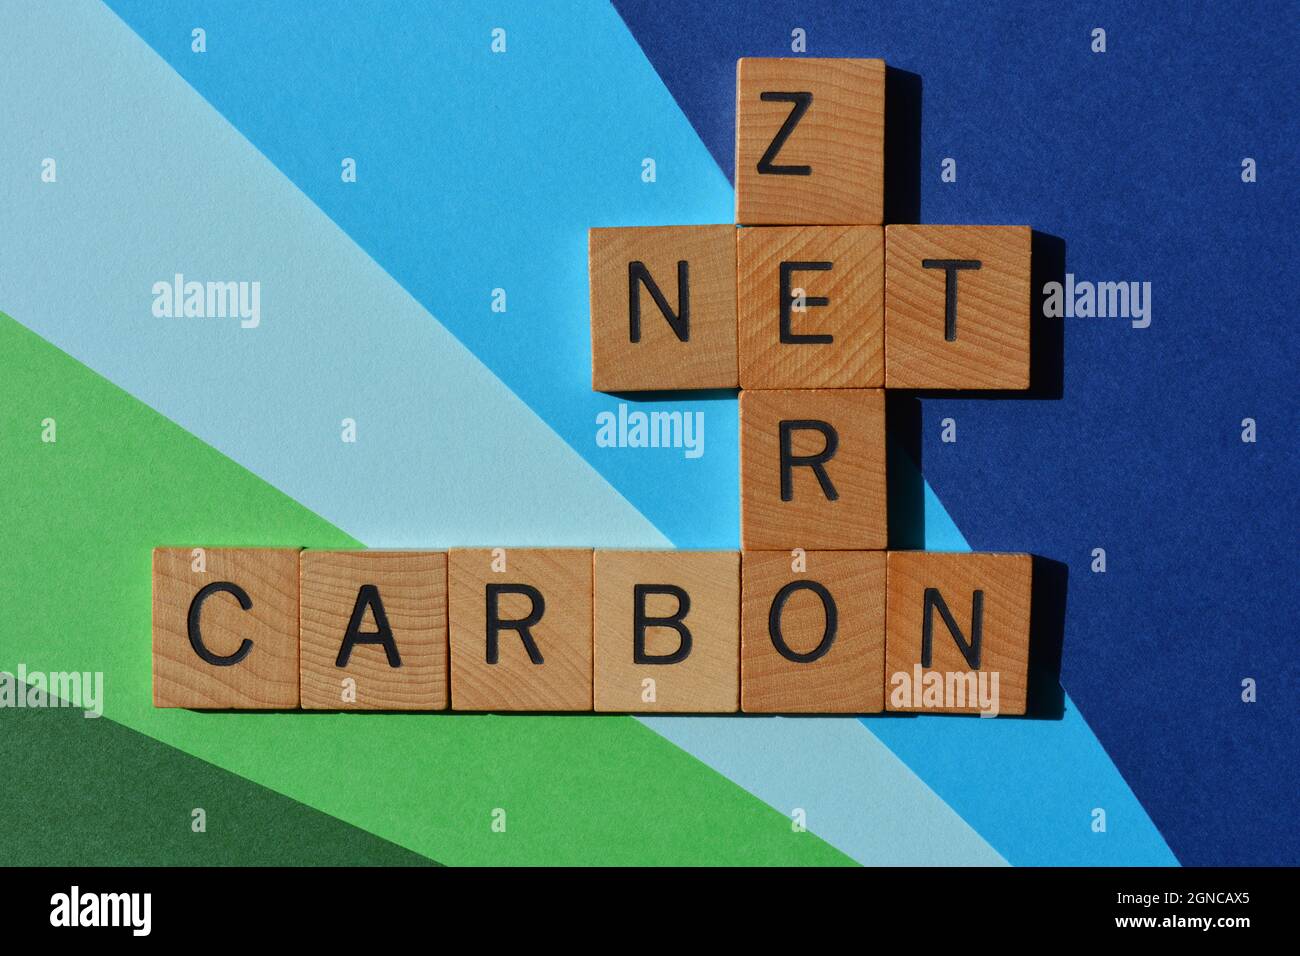 Net, Zero, Carbon, words in wooden alphabet letters in crossword form Stock Photo